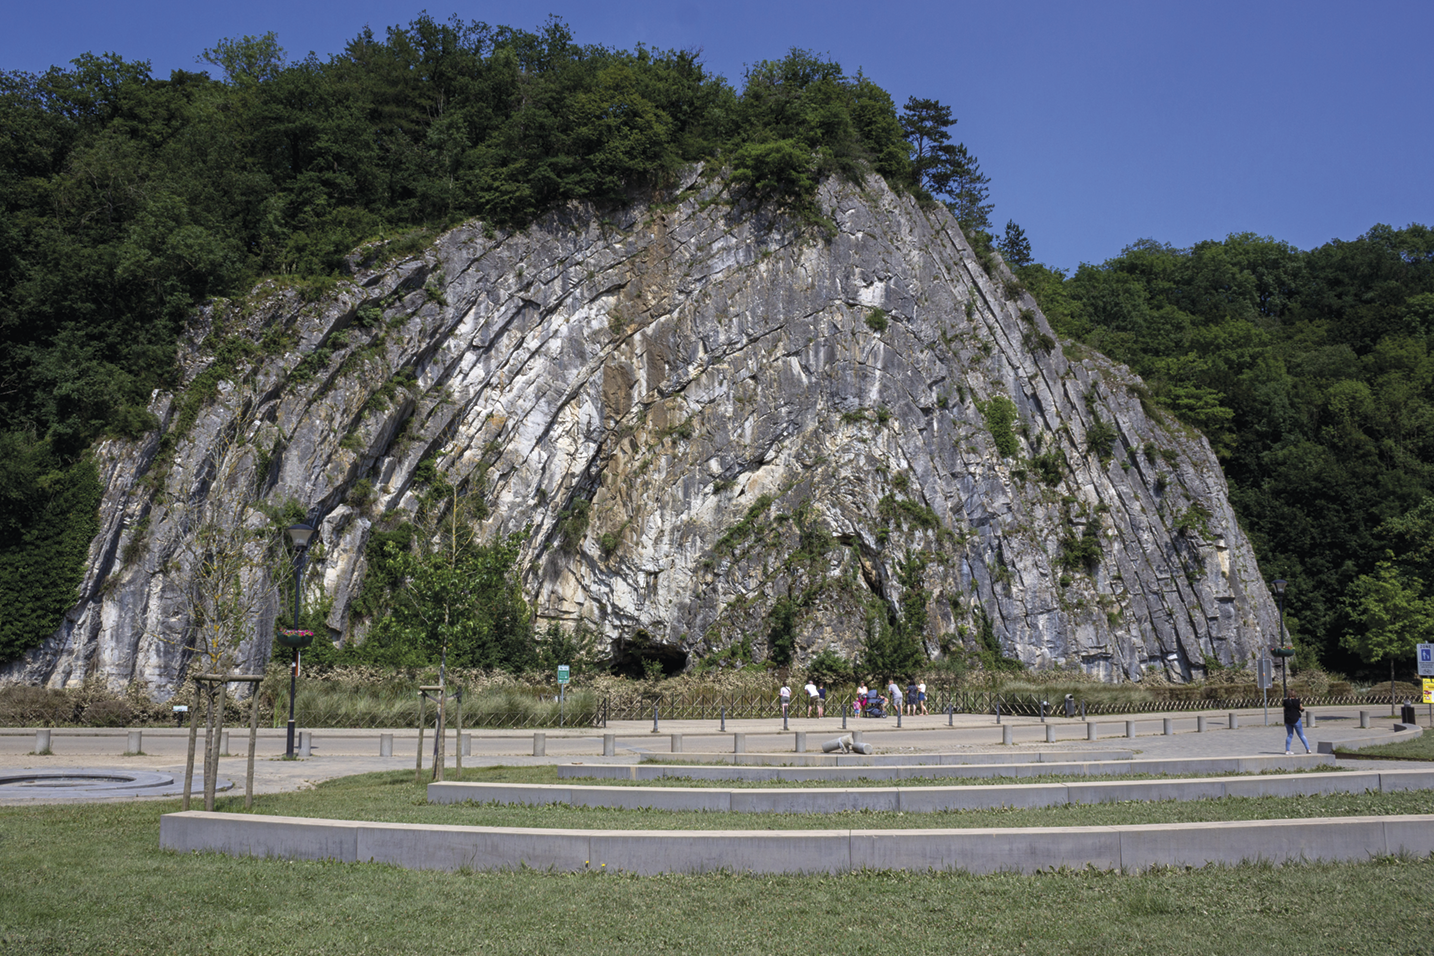 Fotografia. Uma grande rocha com ranhuras e camadas em formato arqueado, com árvores no topo e algumas pessoas a frente.